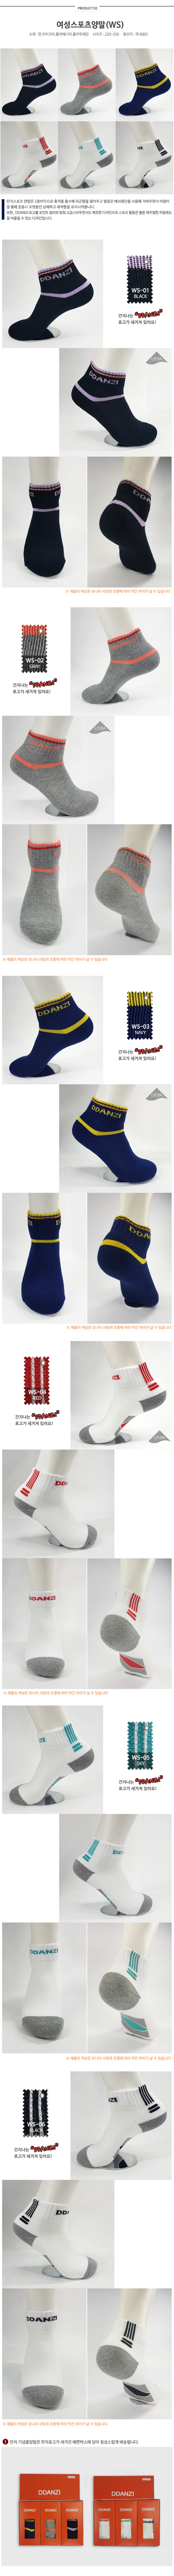 socks_03.jpg